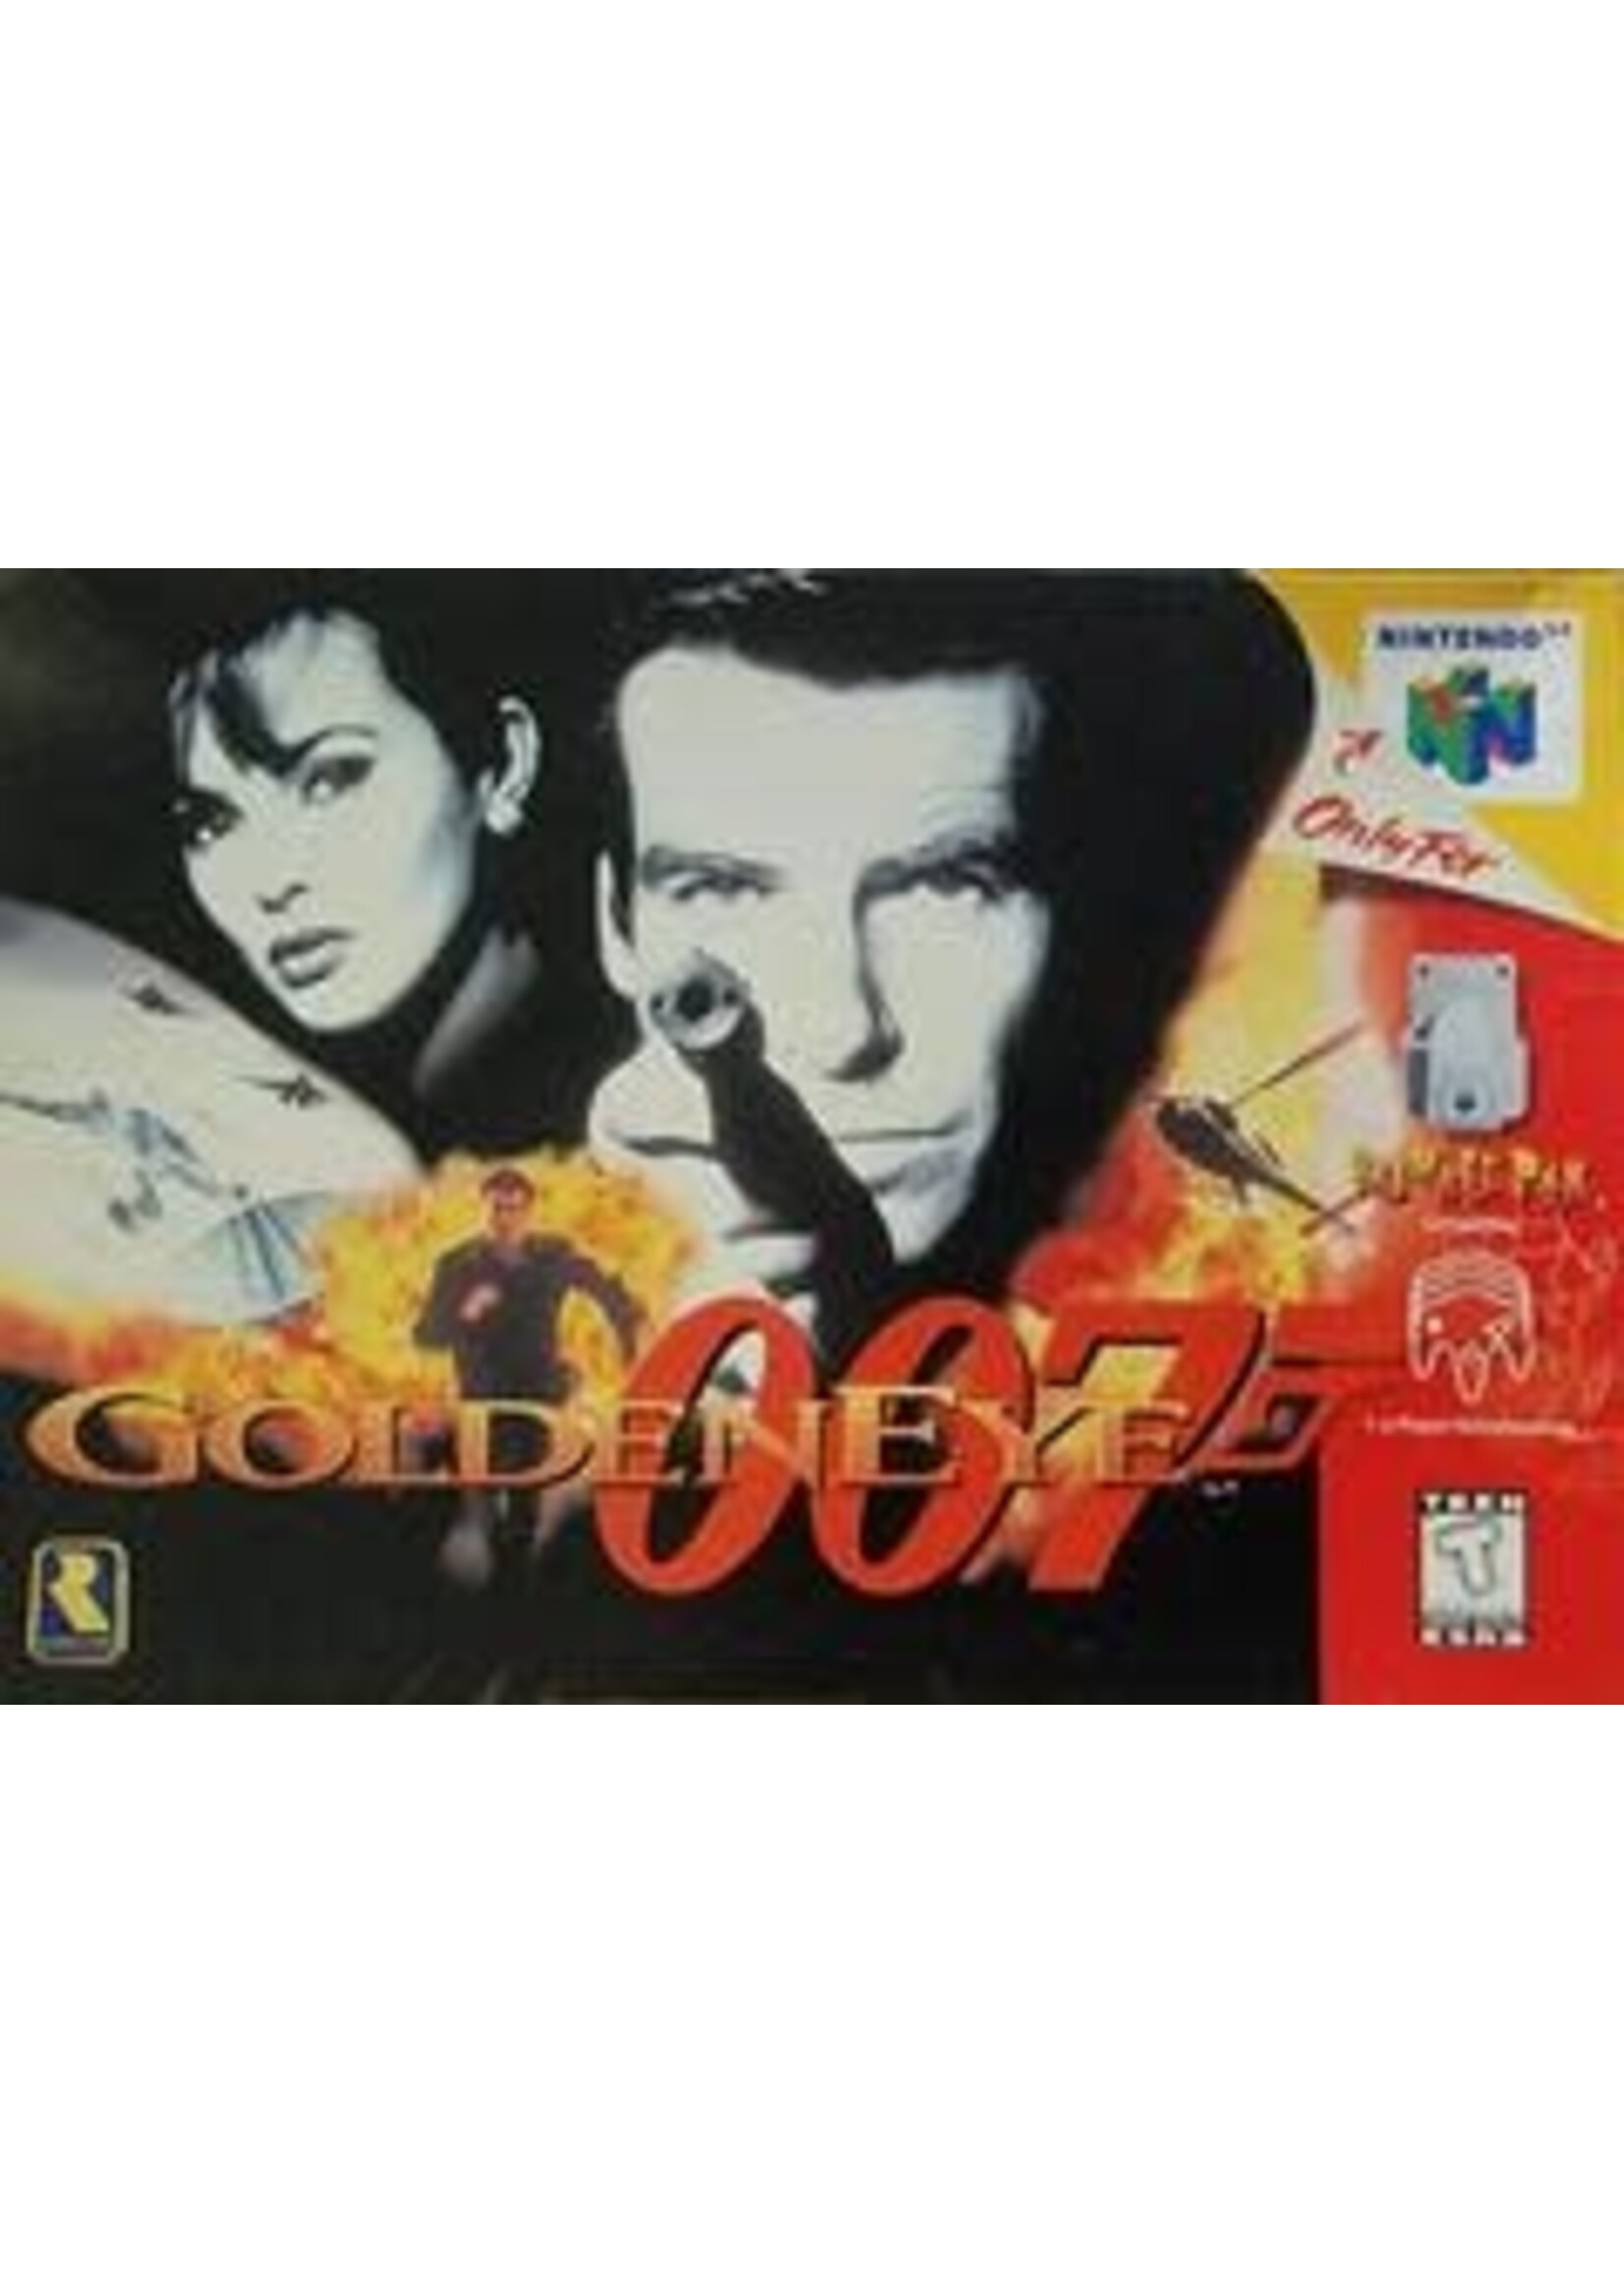 007 GoldenEye Nintendo 64¸COMPLET IN BOX